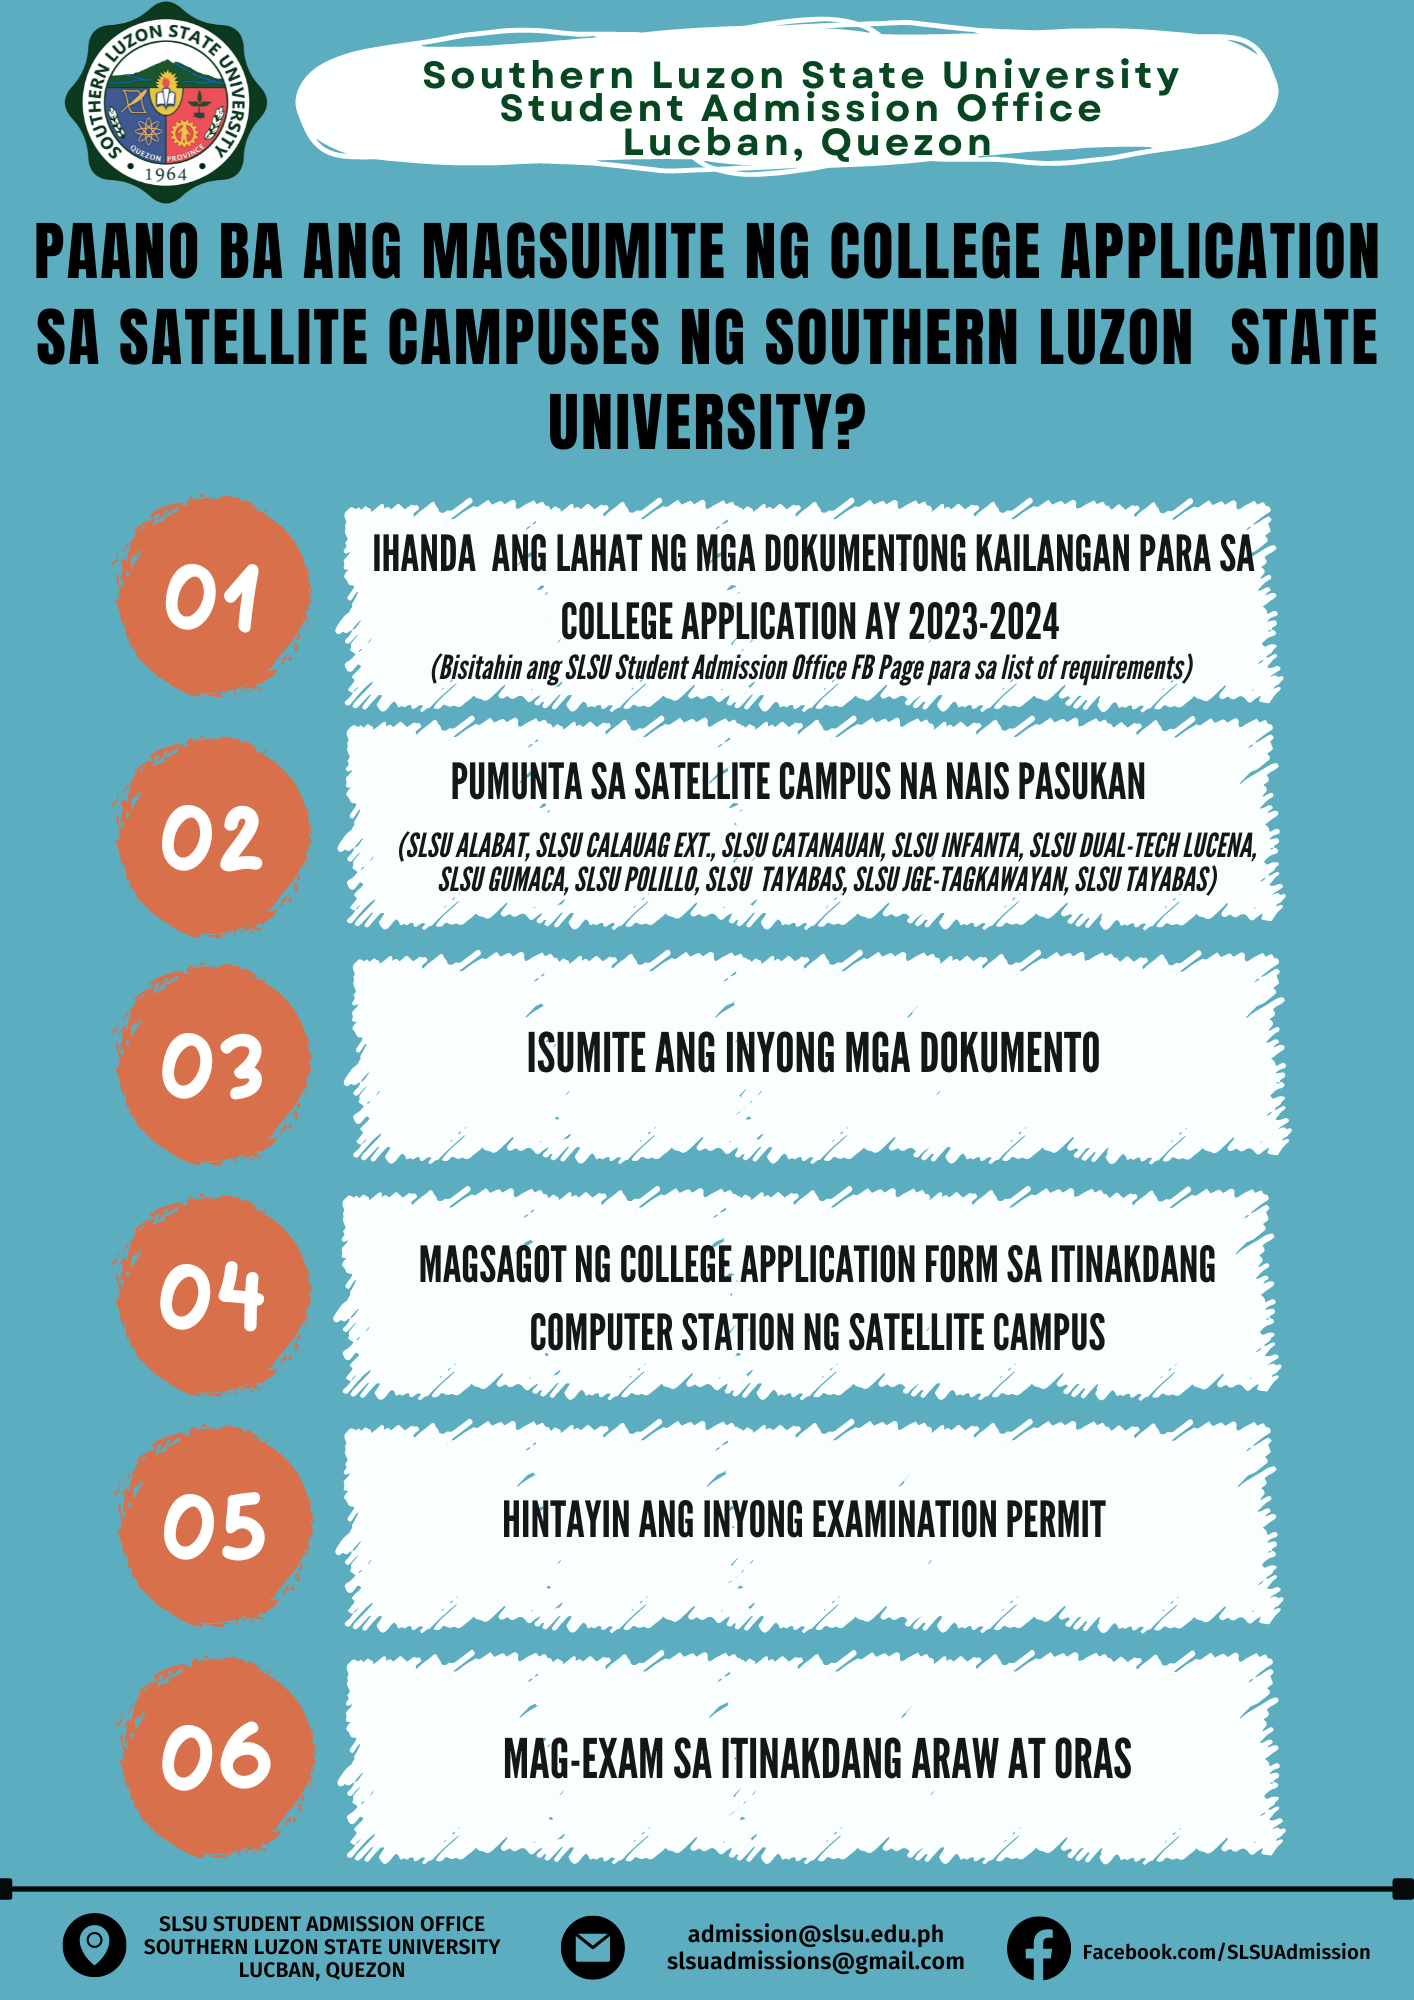 Satellite campuses